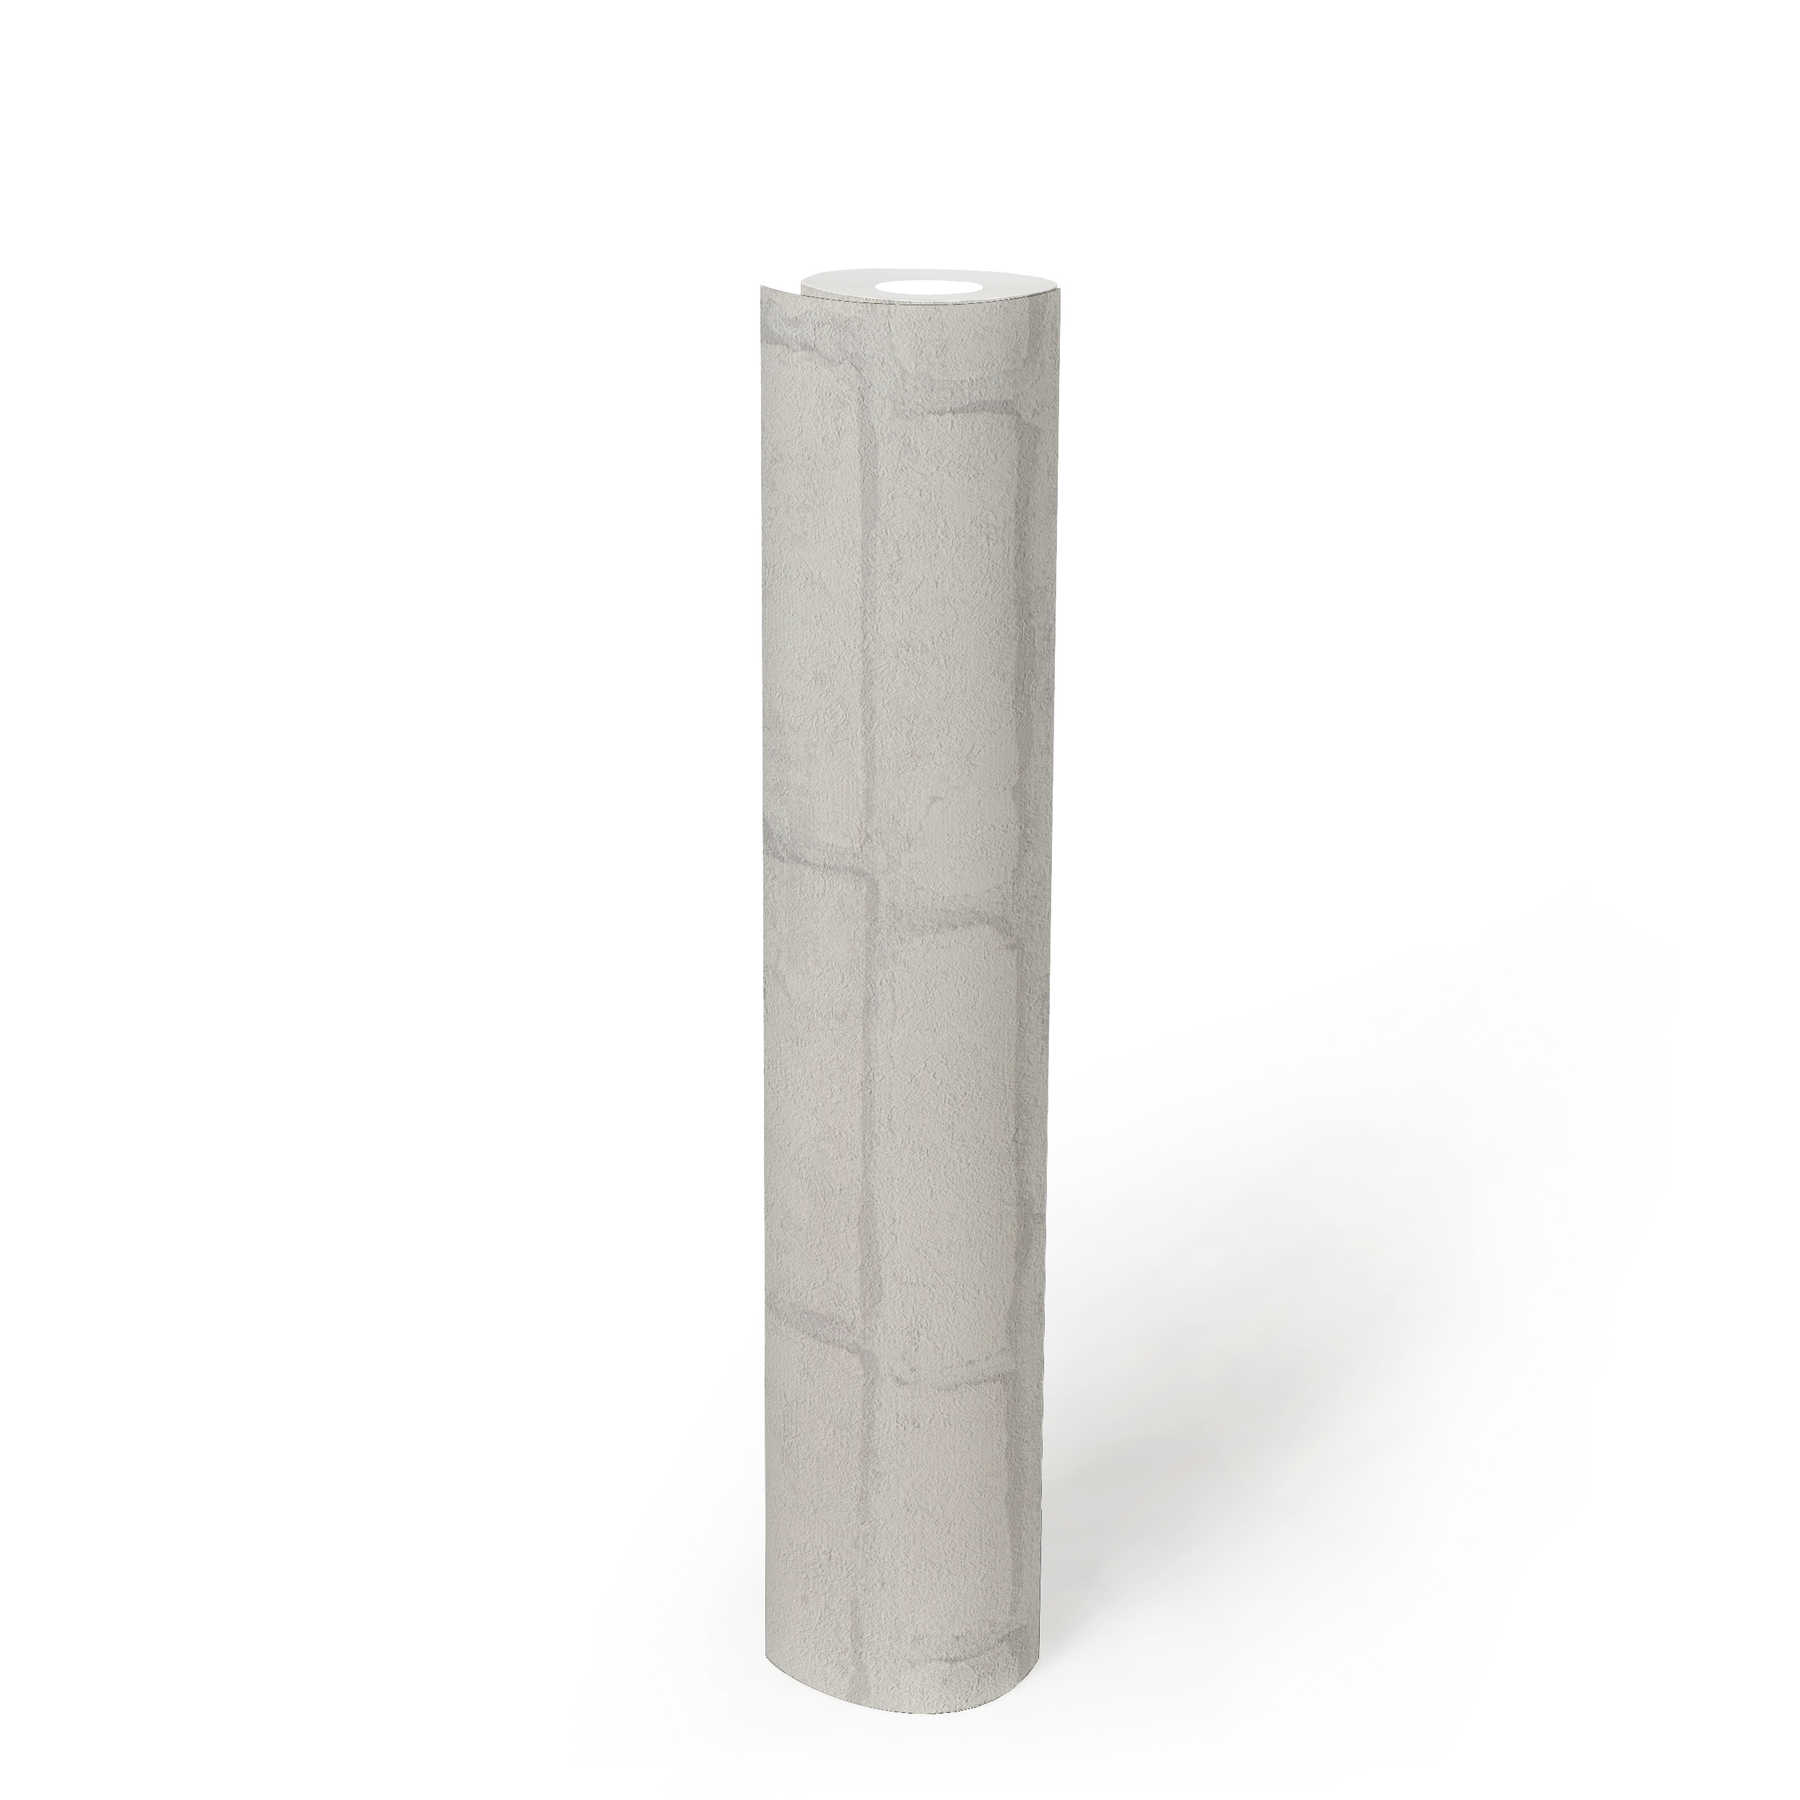             Papier peint brique clair Motifs de briques dans le design industriel - blanc, gris
        